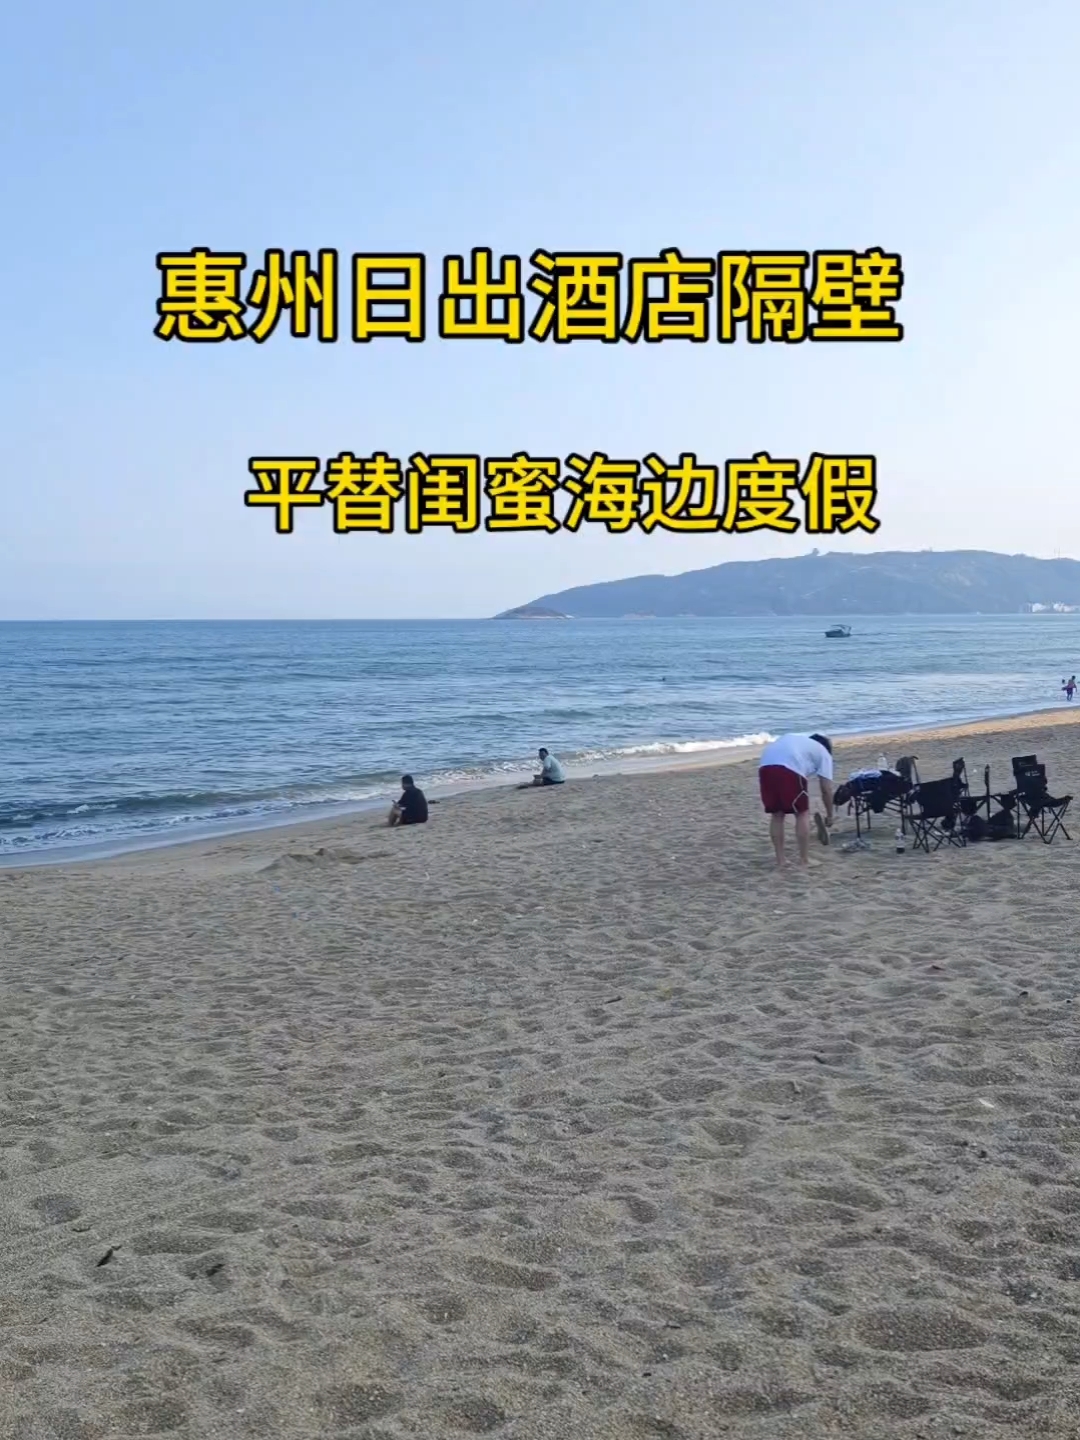 惠州日出沙滩隔壁平替闺蜜海边度假